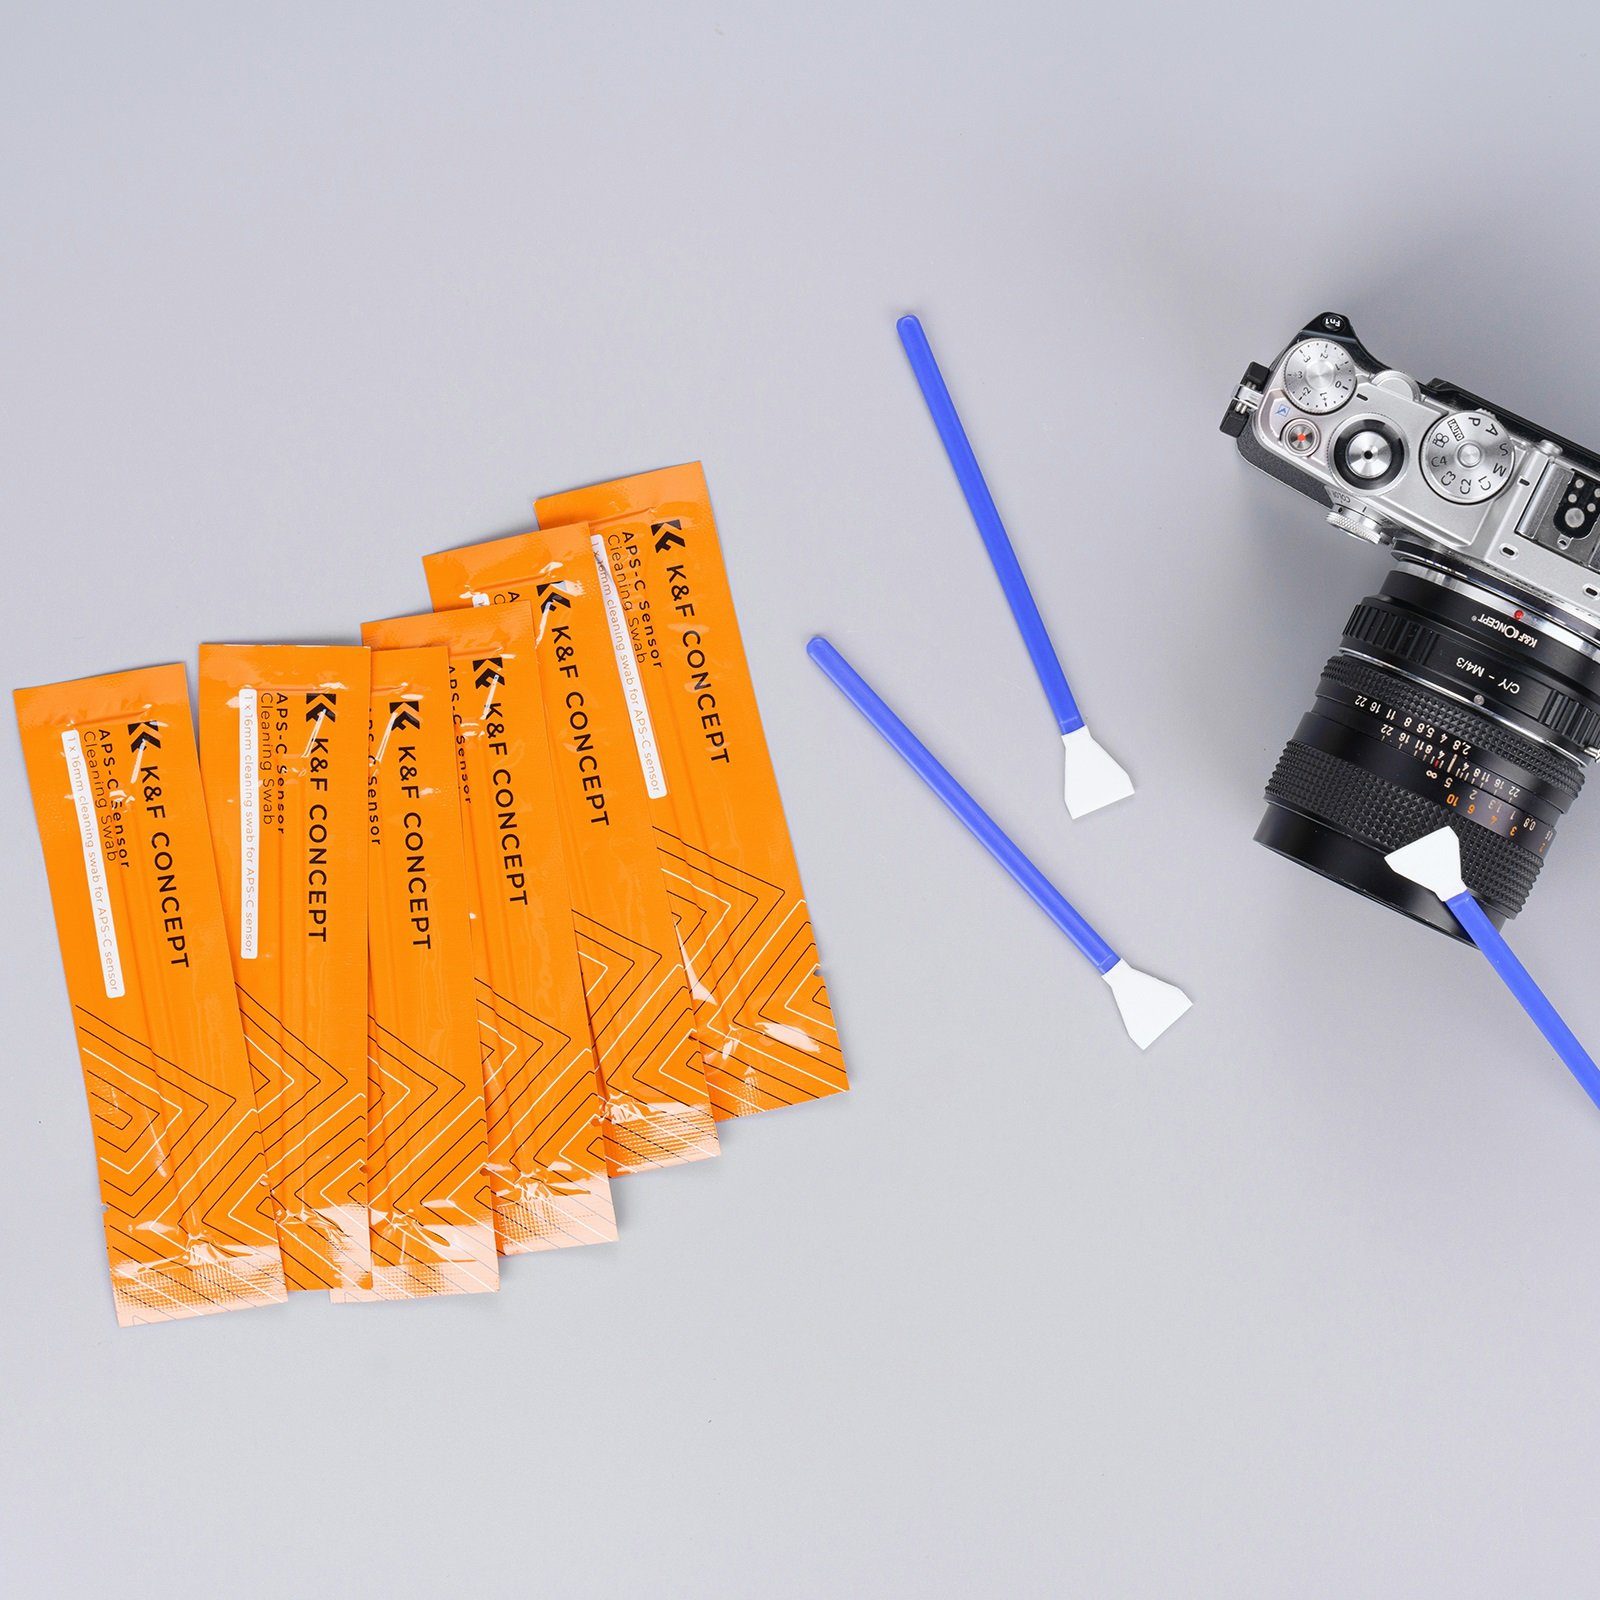 Minadax Kamerazubehör-Set KF Sensor Reiniger APS-C Reiniger Blasebalg 16mm 10x Handschuhe Swabs